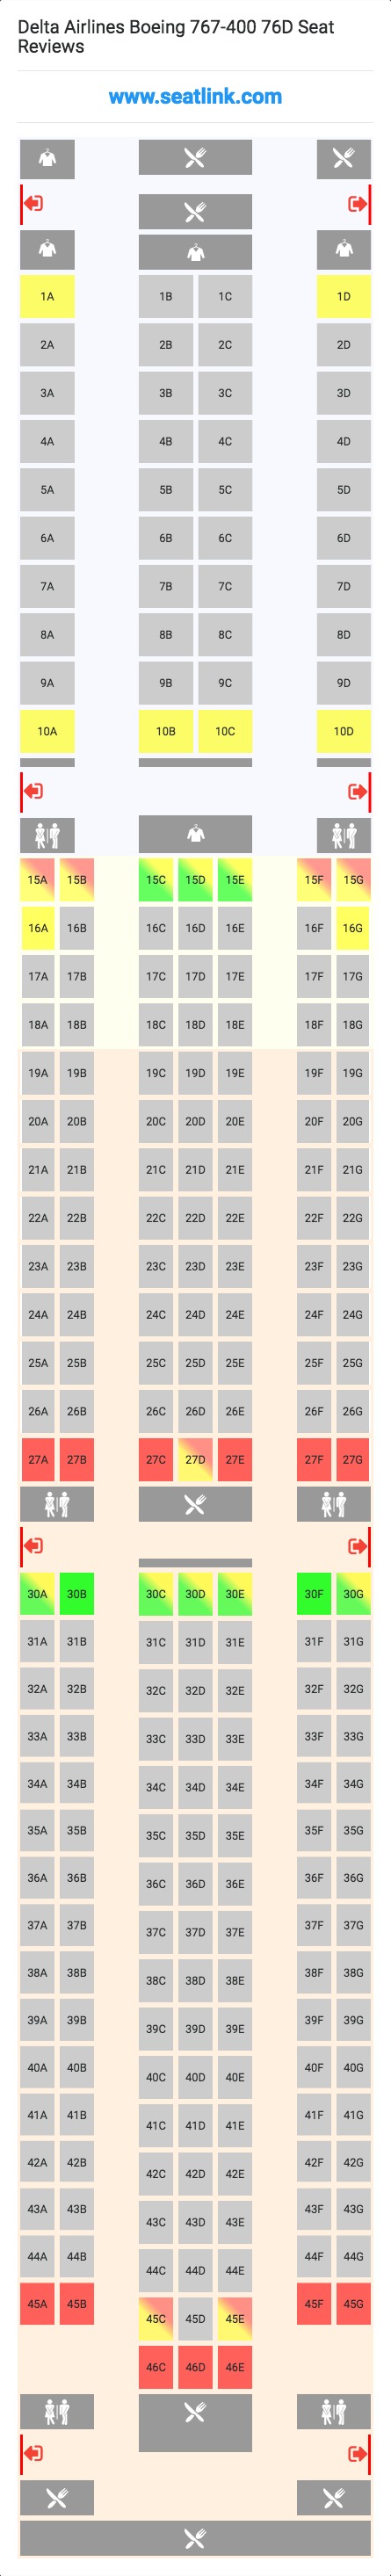 Delta Flight 140 Seating Chart